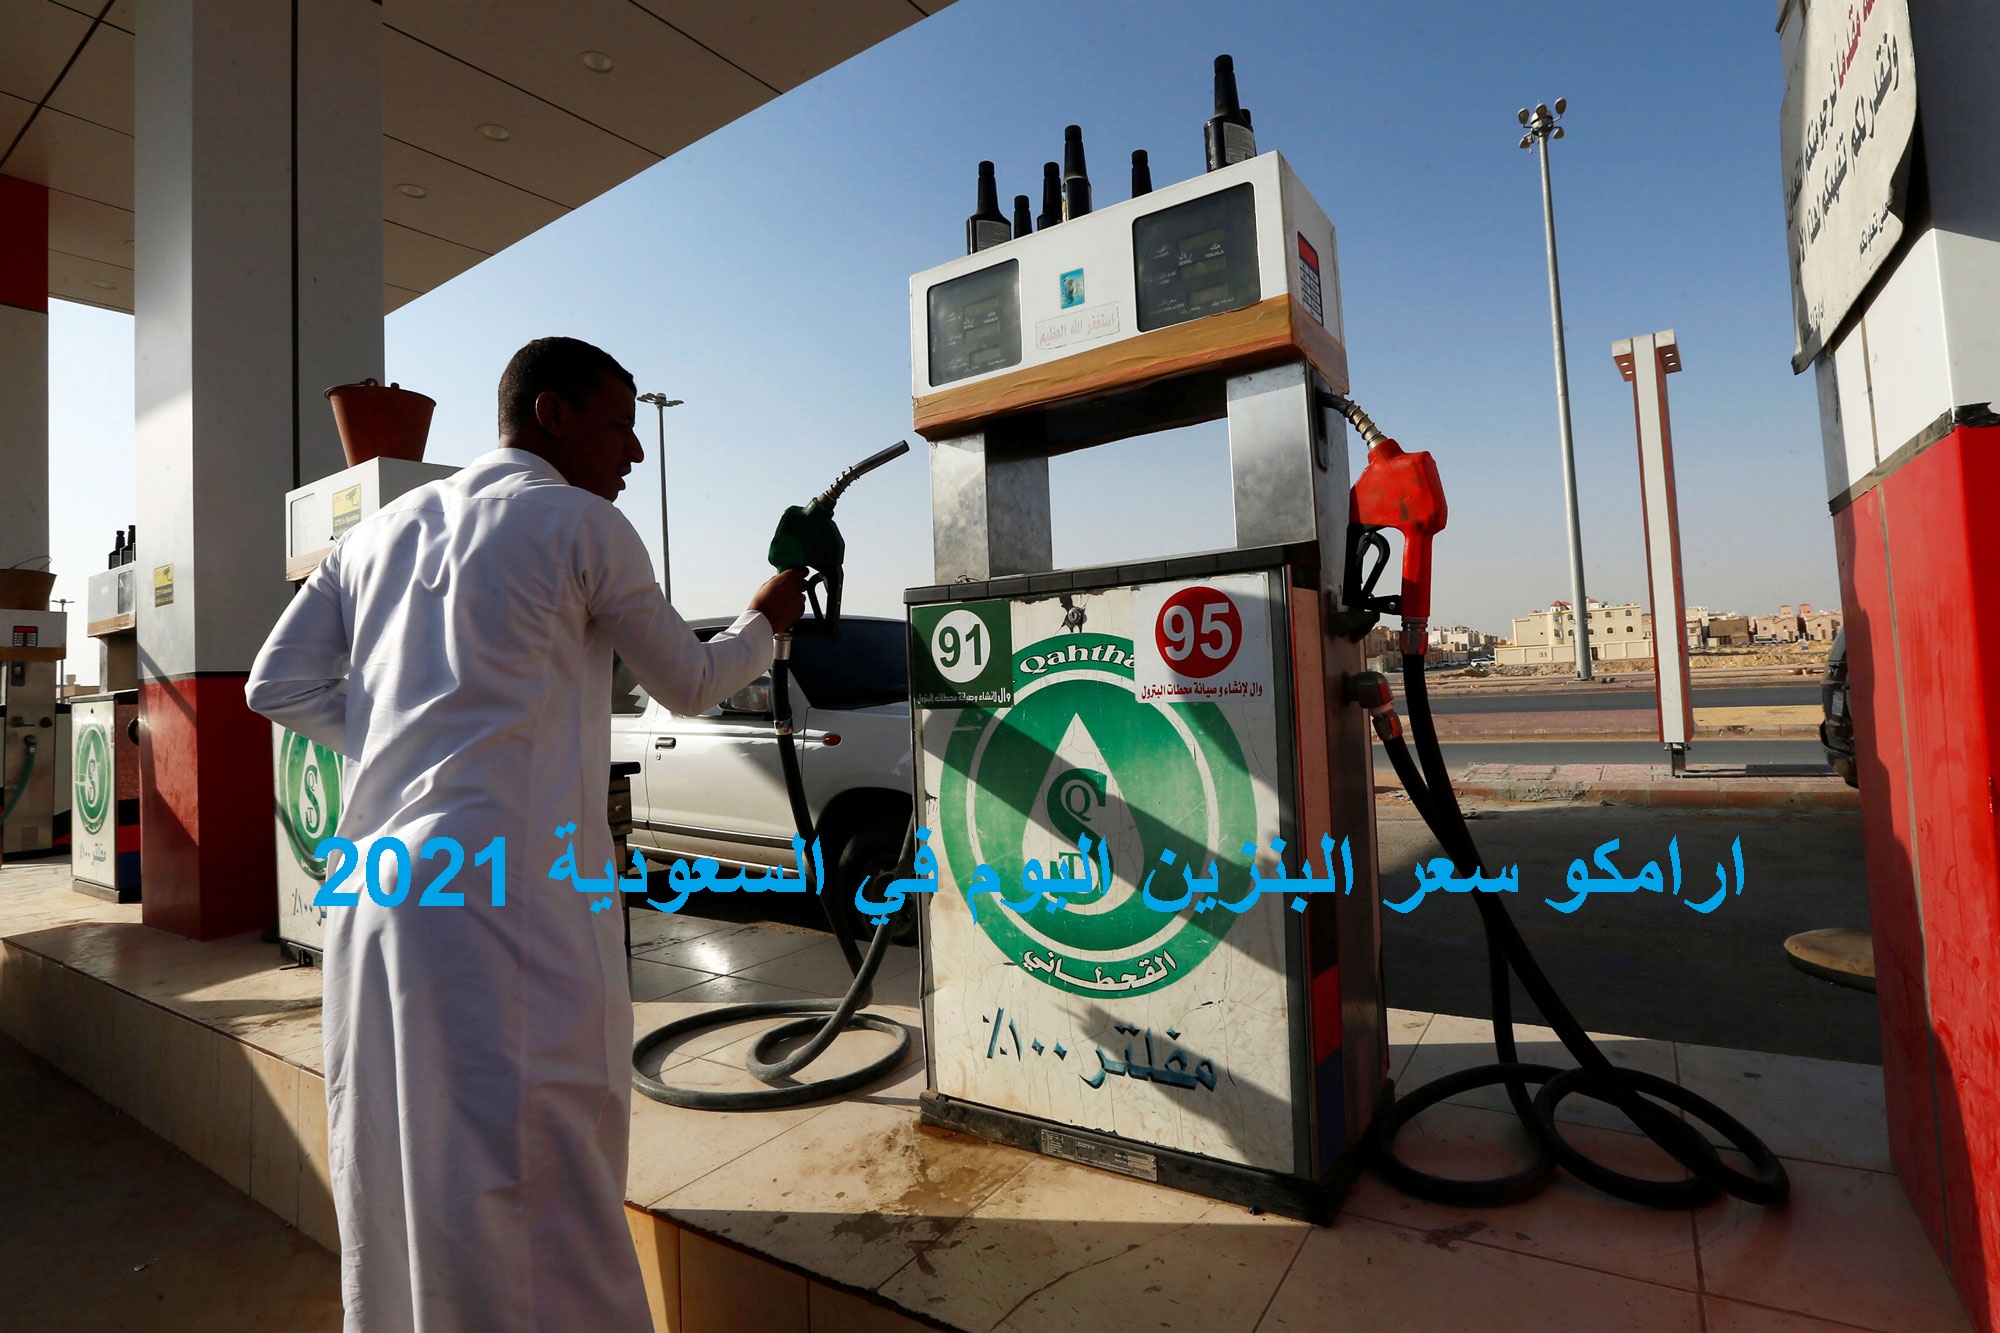 ارامكو سعر البنزين اليوم في السعودية 2021